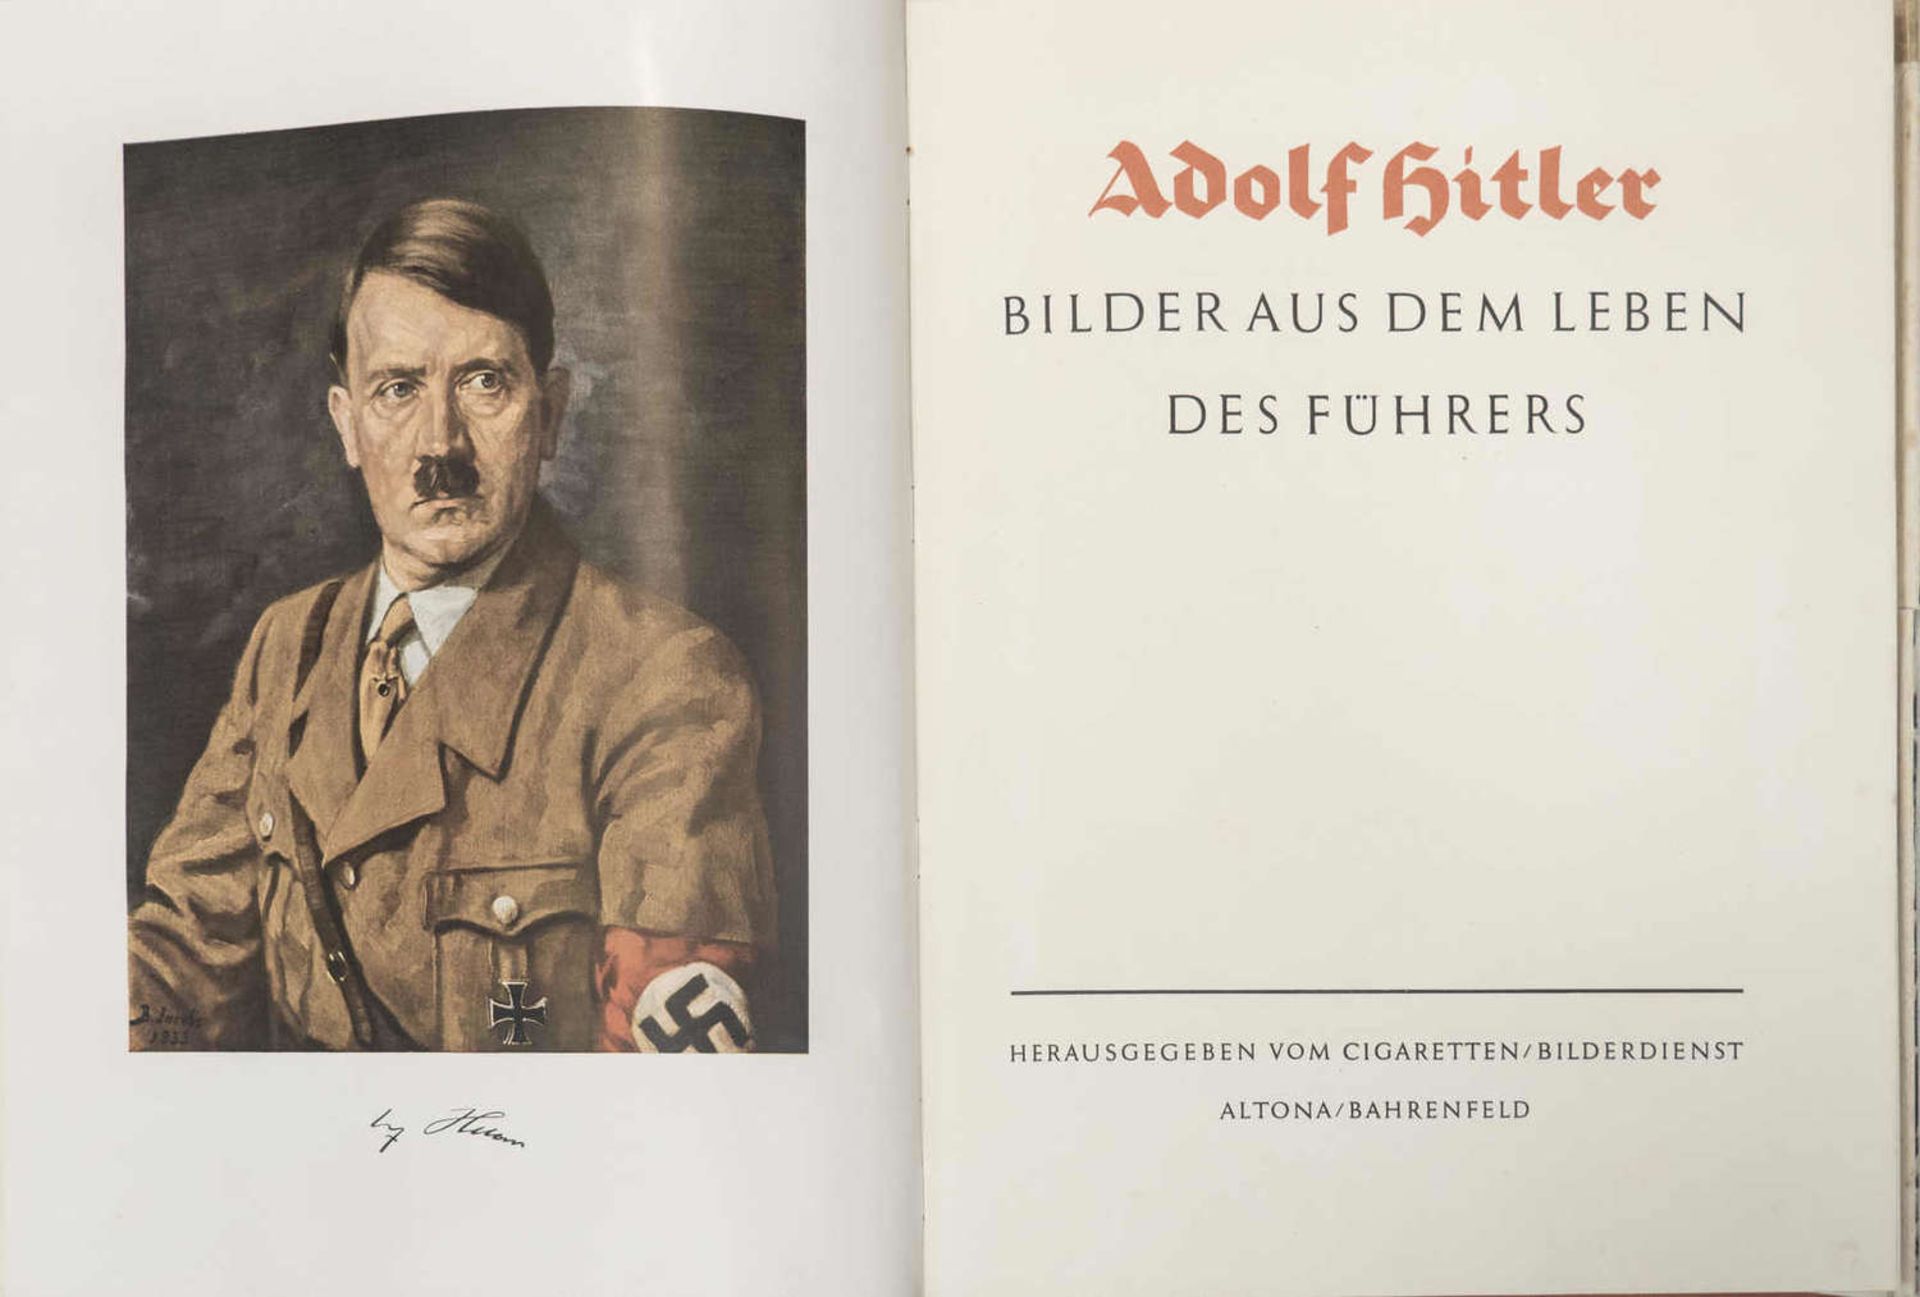 Sammelbilder - Album "Adolf Hitler - Bilder aus dem Leben des Führers". Augenscheinlich komplett. - Image 2 of 3